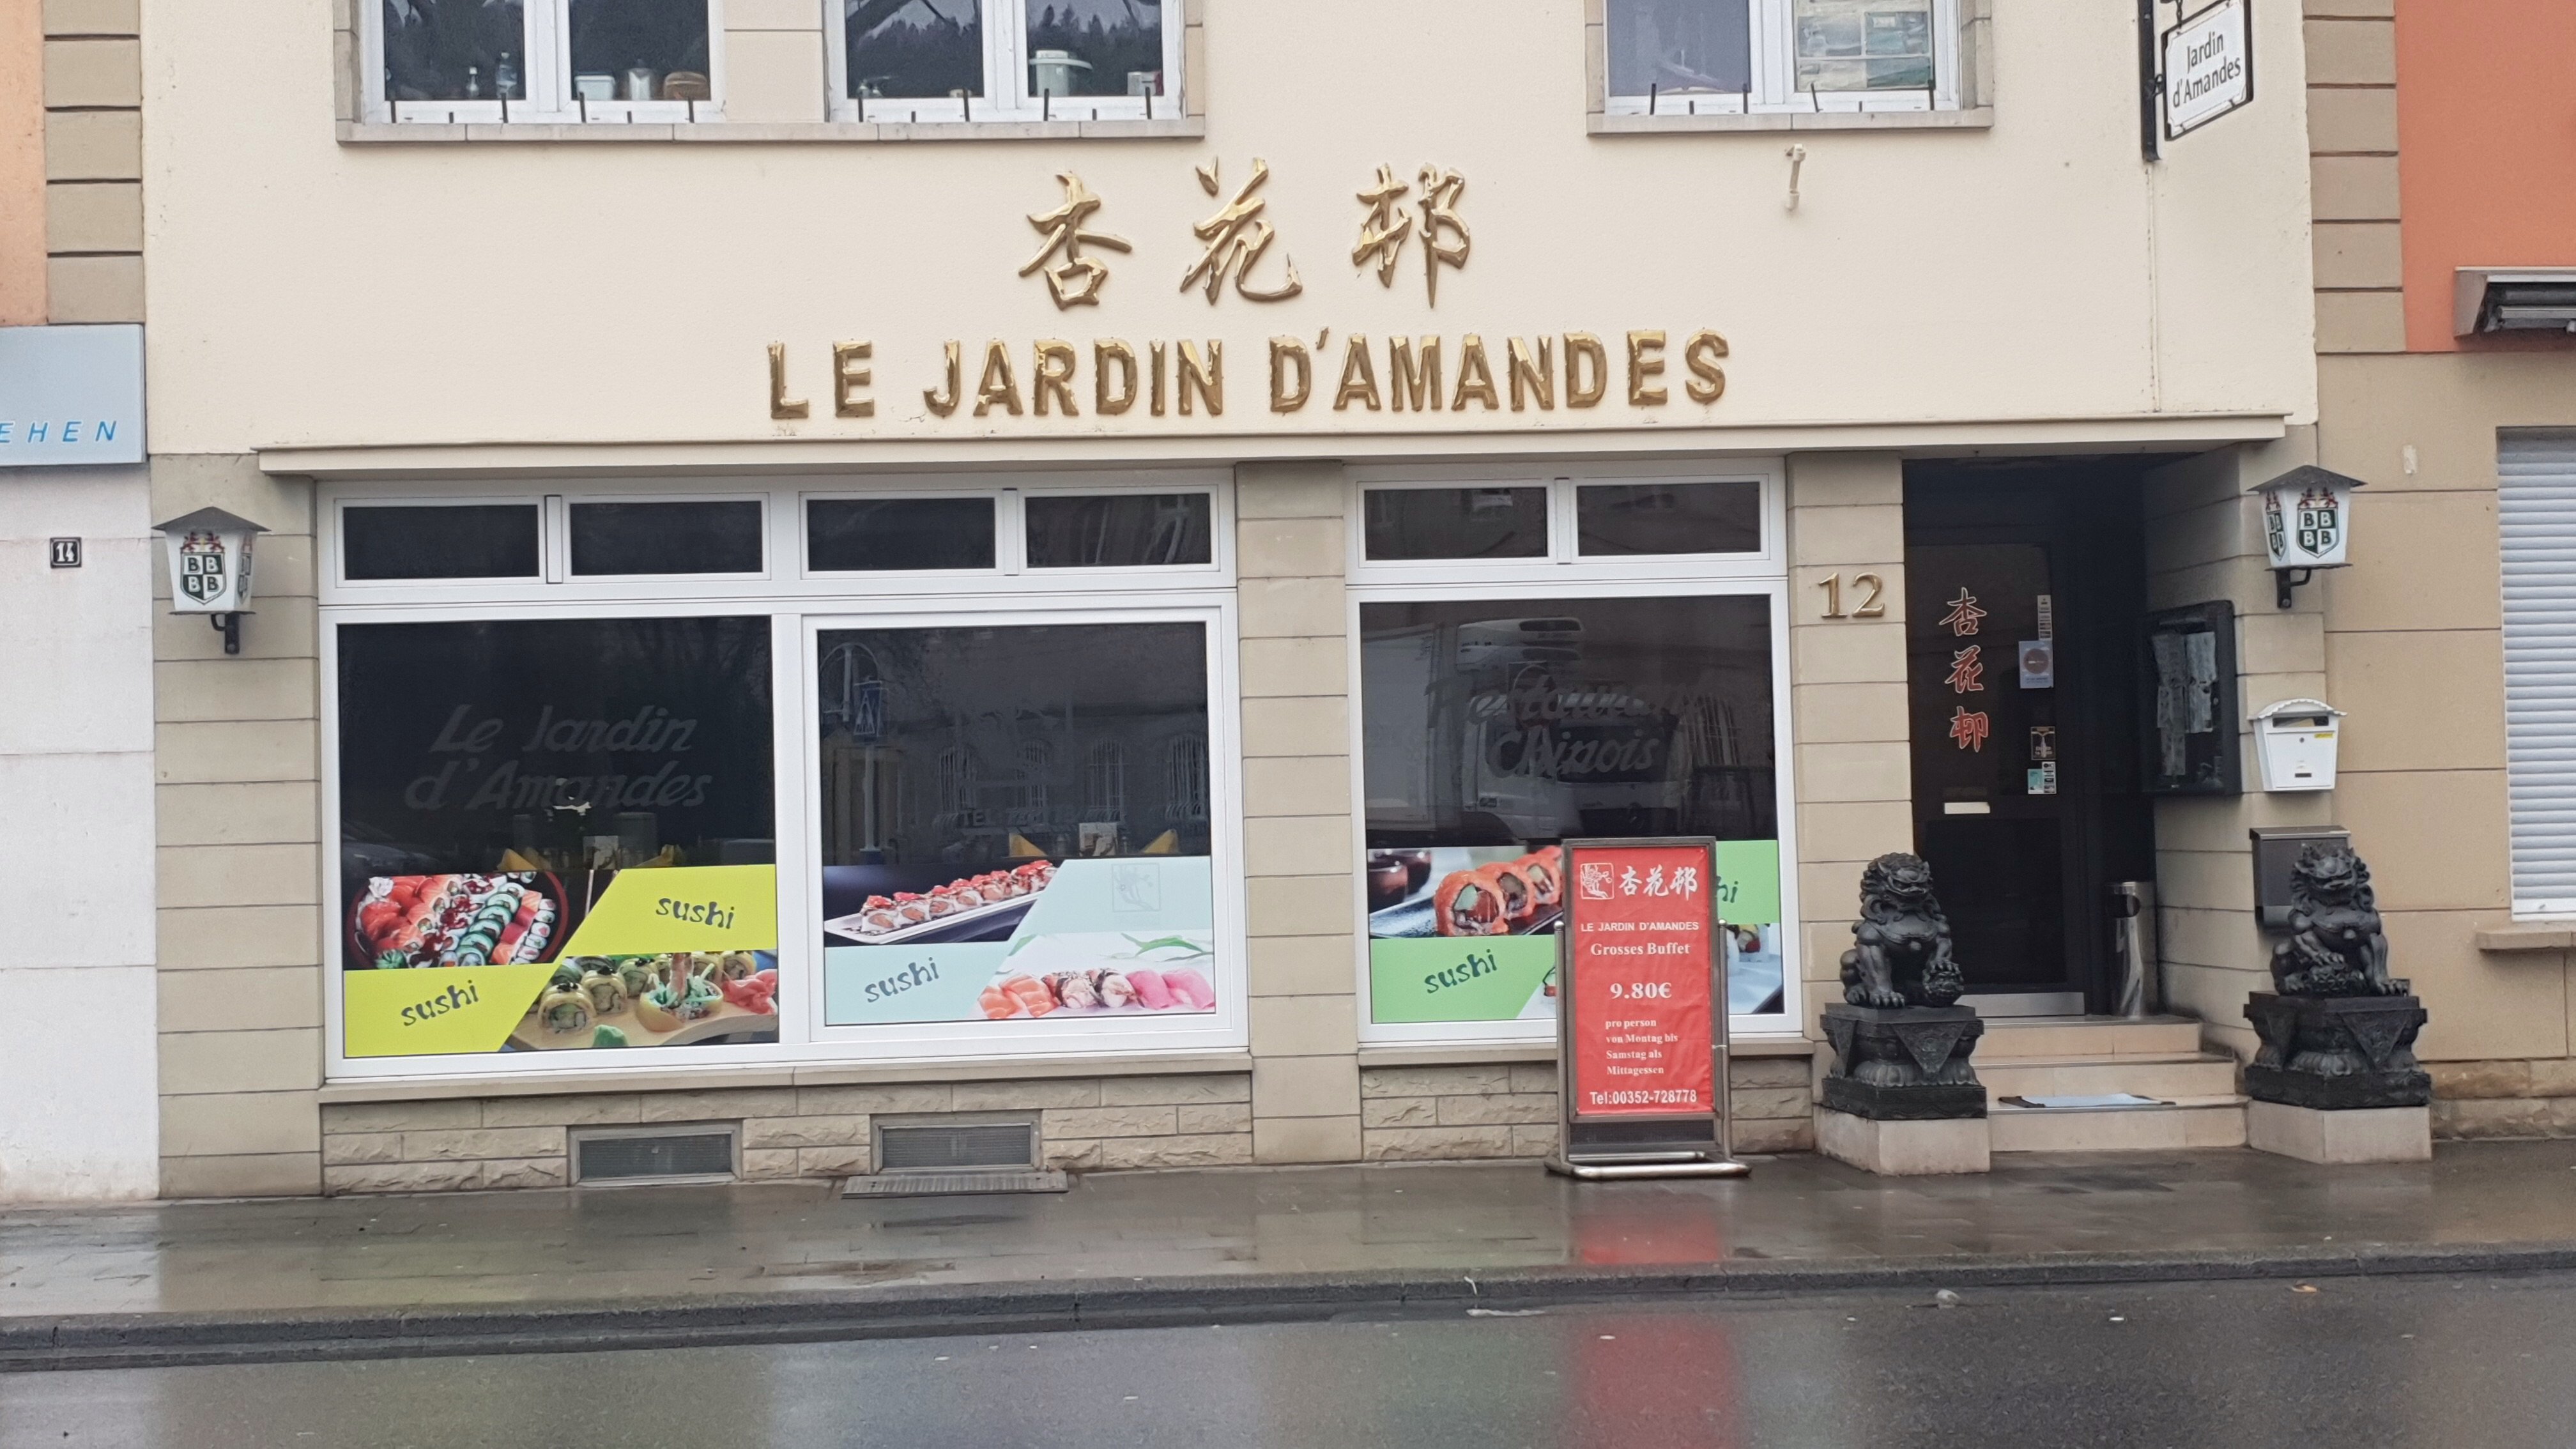 LE JARDIN D'AMANDES